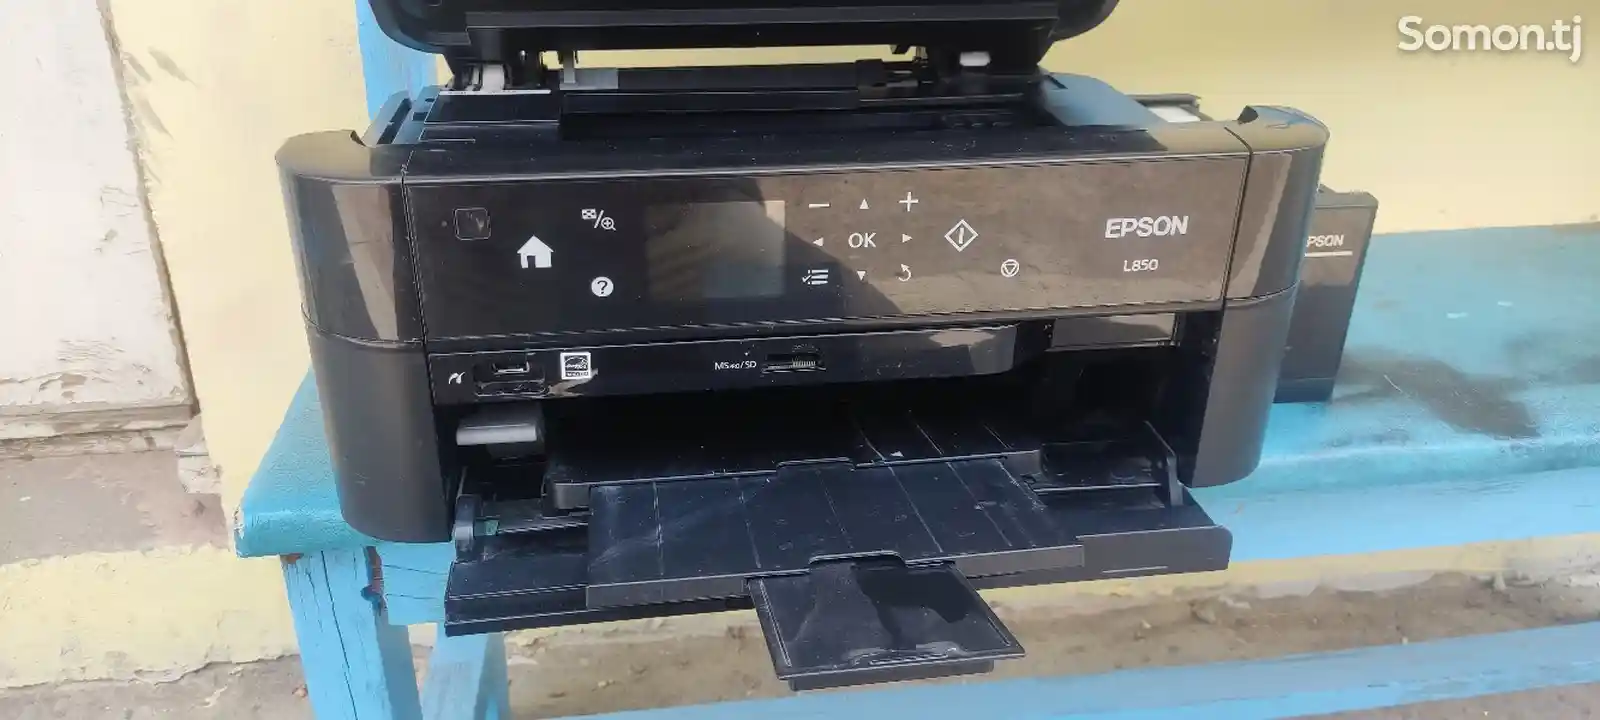 Принтер epson l850 3 в1-1